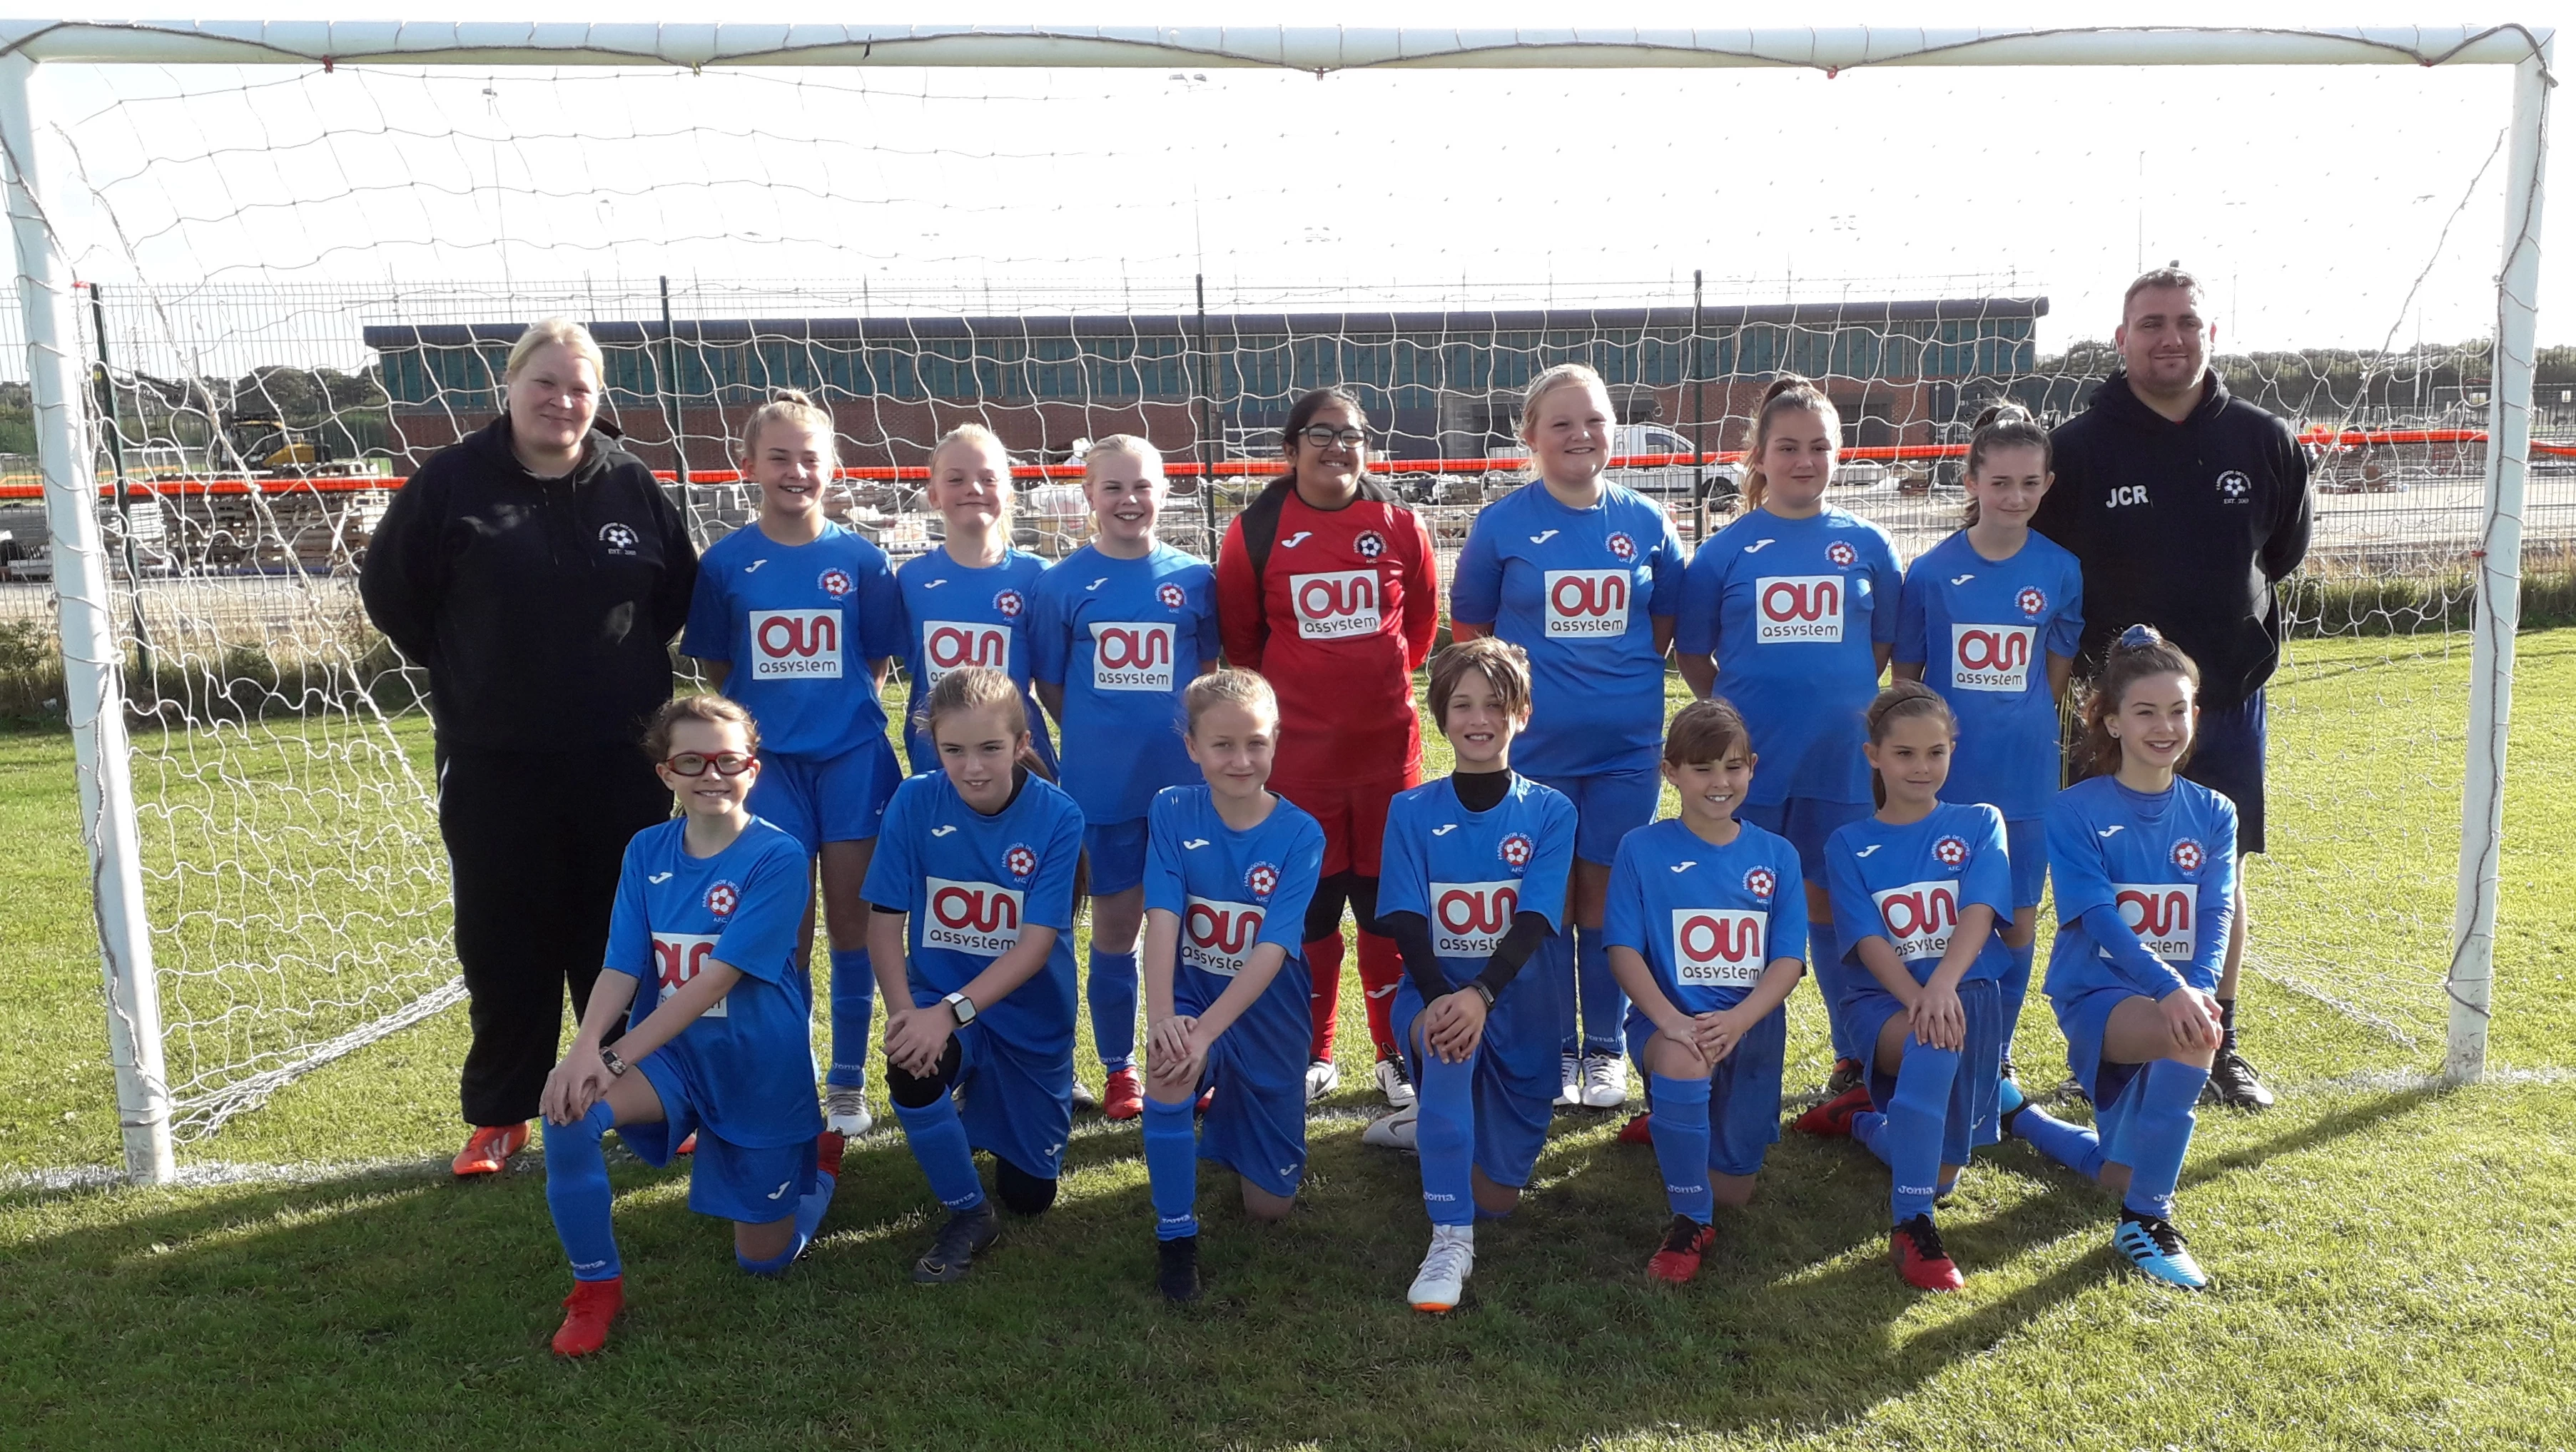 Farringdon Detached U12 Girls’ football team